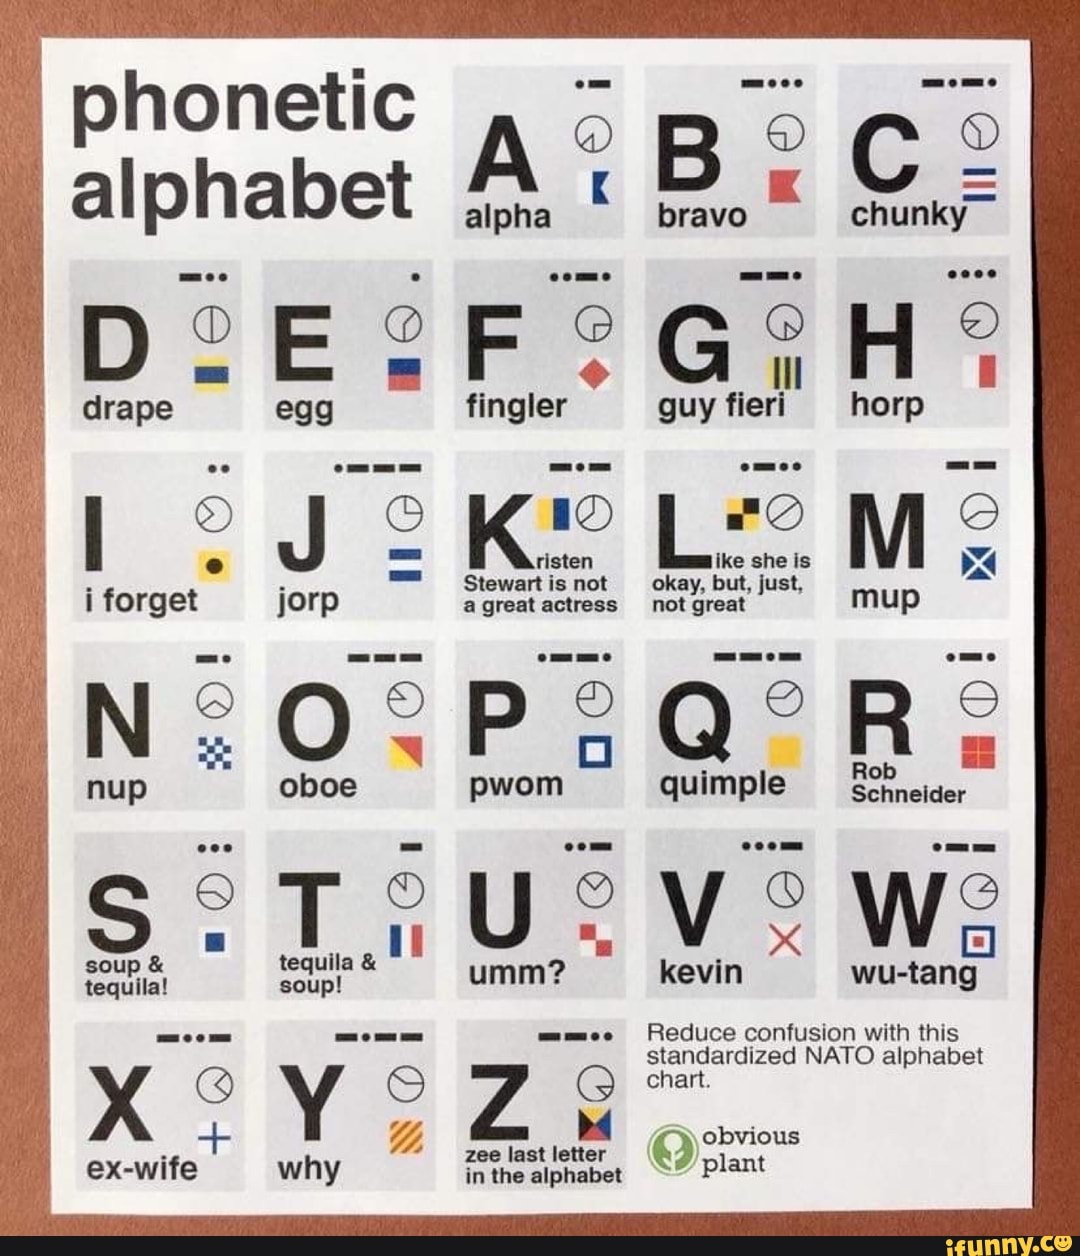 )phonetic alphabet K bravo E OE y egg fingler guy fieri horp rs Stewart